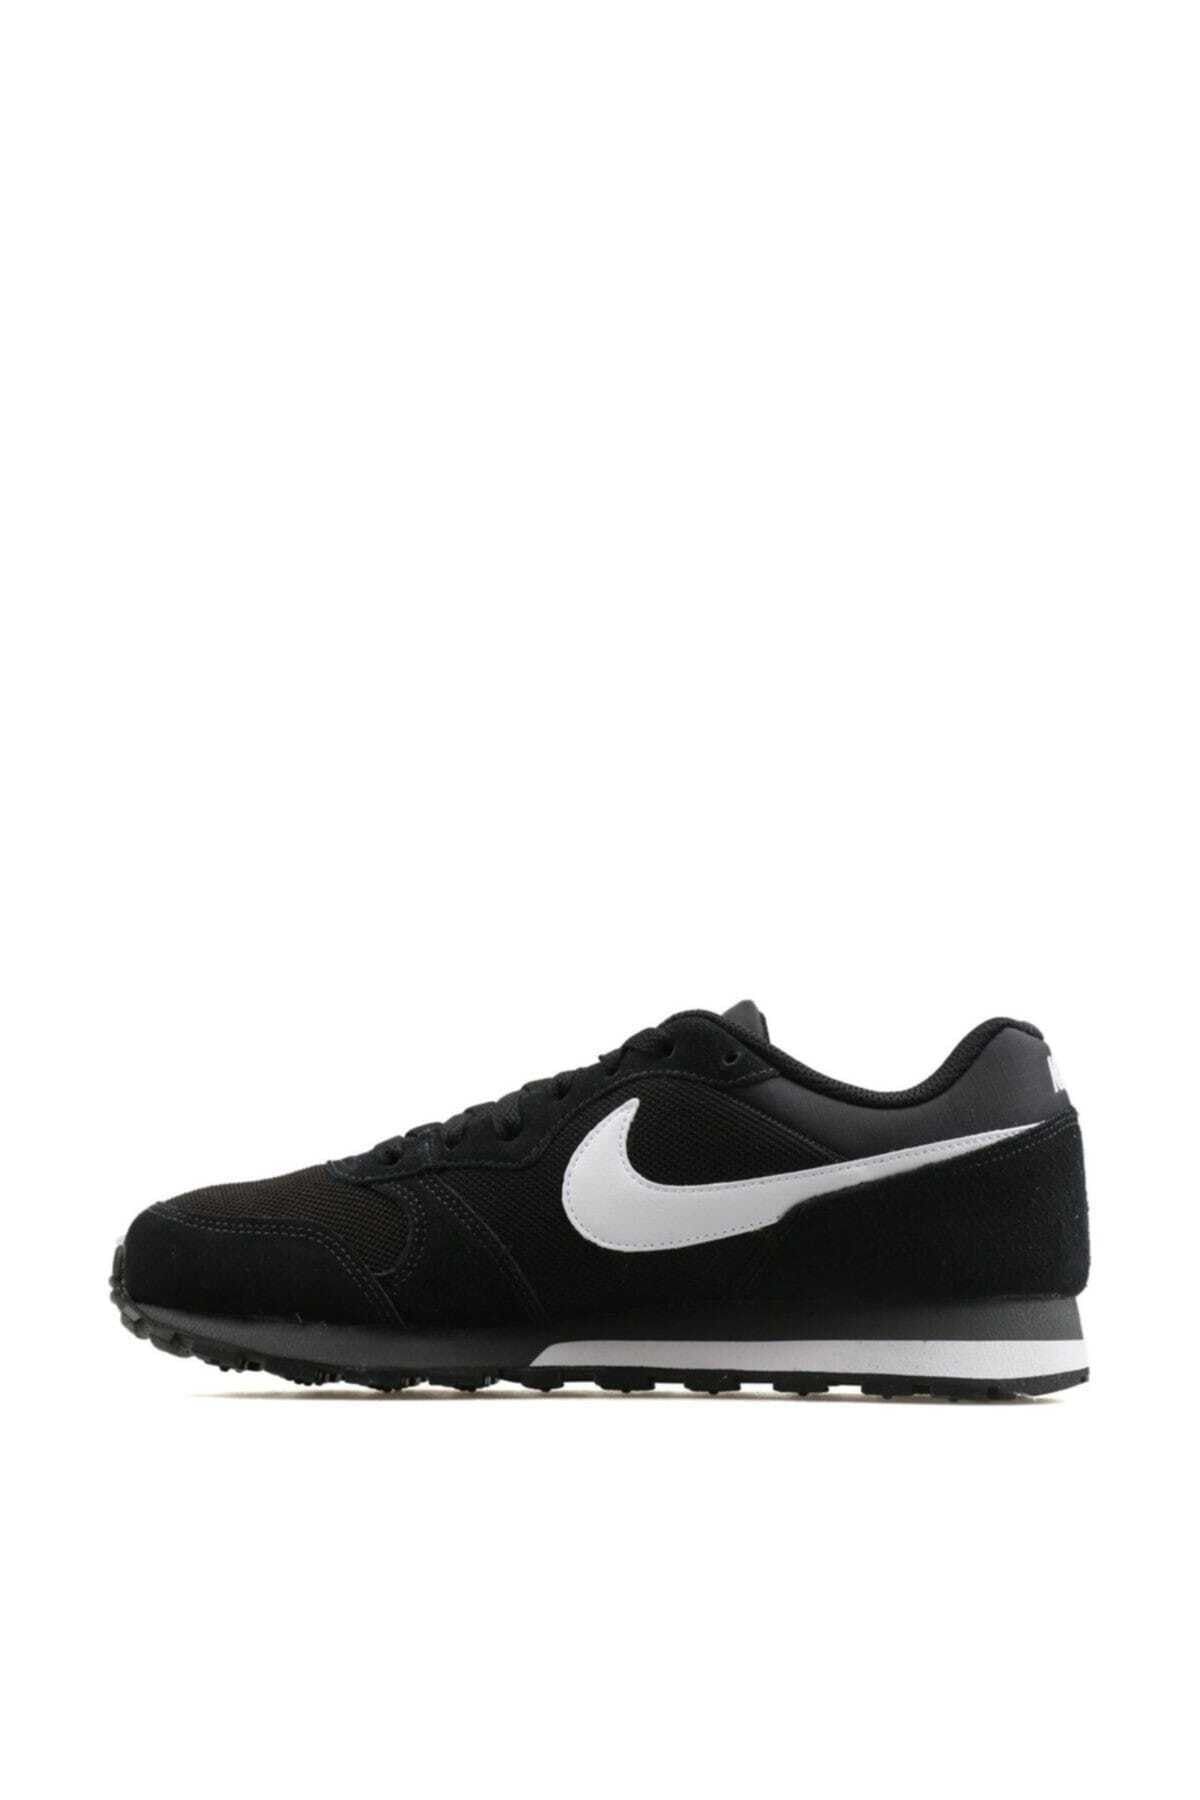 Tolk grafisch Heel boos Nike Erkek Ayakkabı - Md Runner 2 - 749794-010 Fiyatı, Yorumları - Trendyol